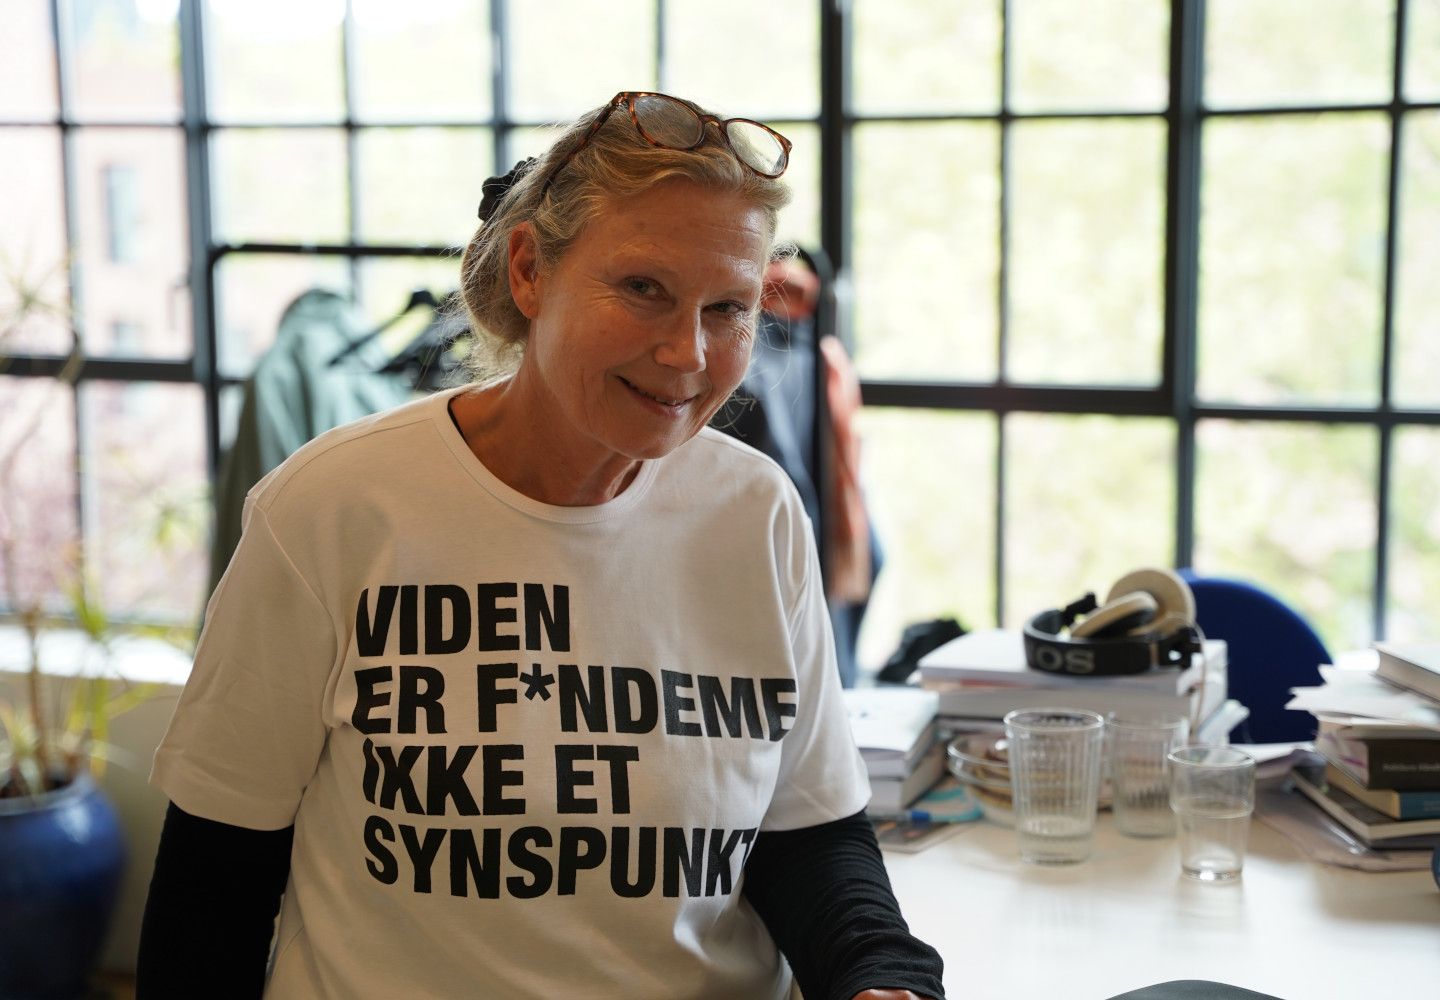 Vibeke Hjortlund iført t-shirt, hvor der står: "Viden er f*ndeme ikke et synspunkt".